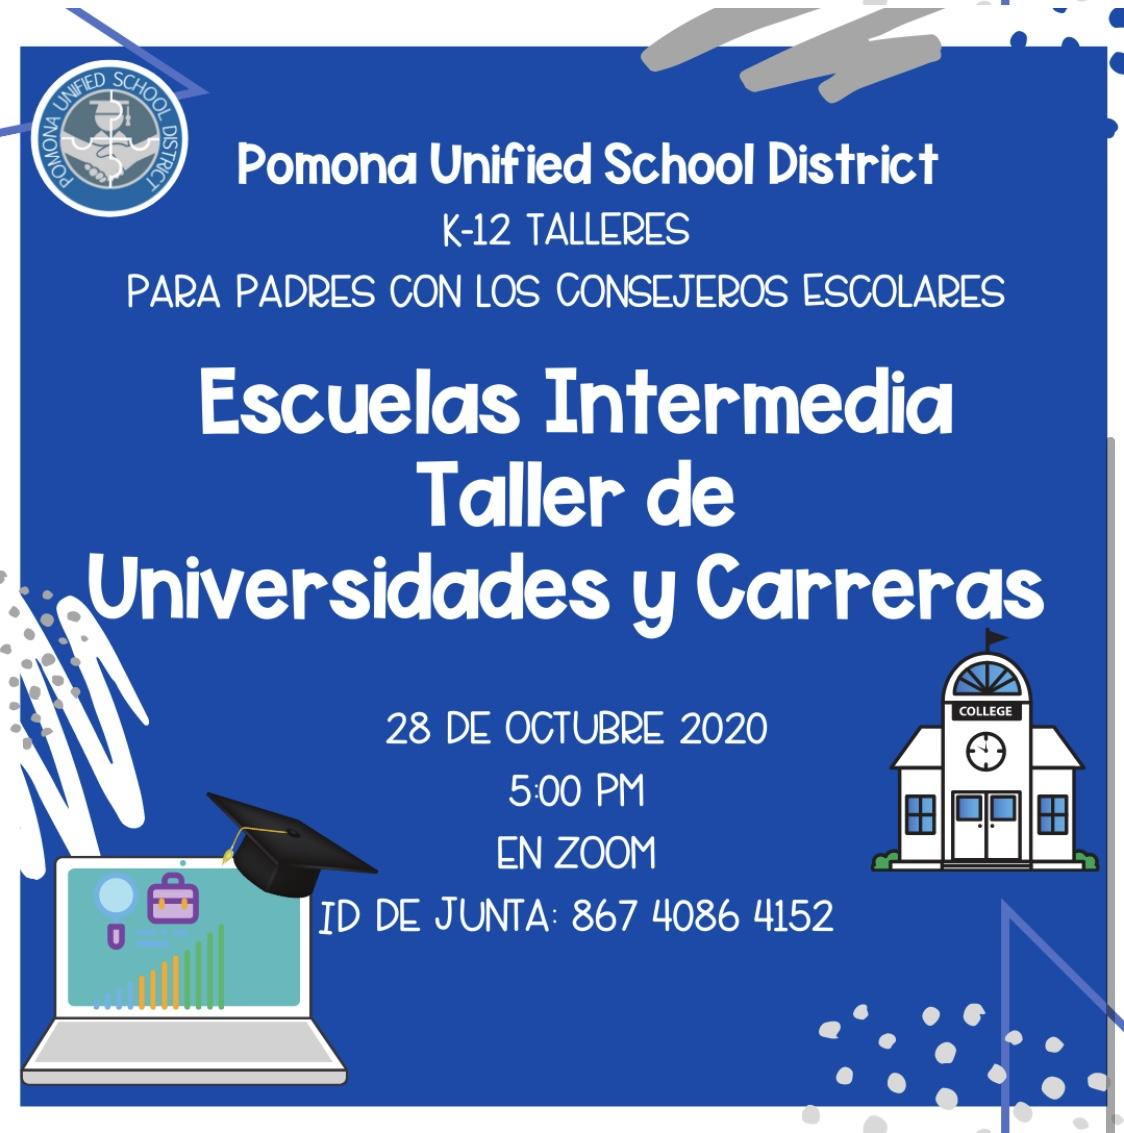 Escuela Intermedia Taller de Universidades y Carreras